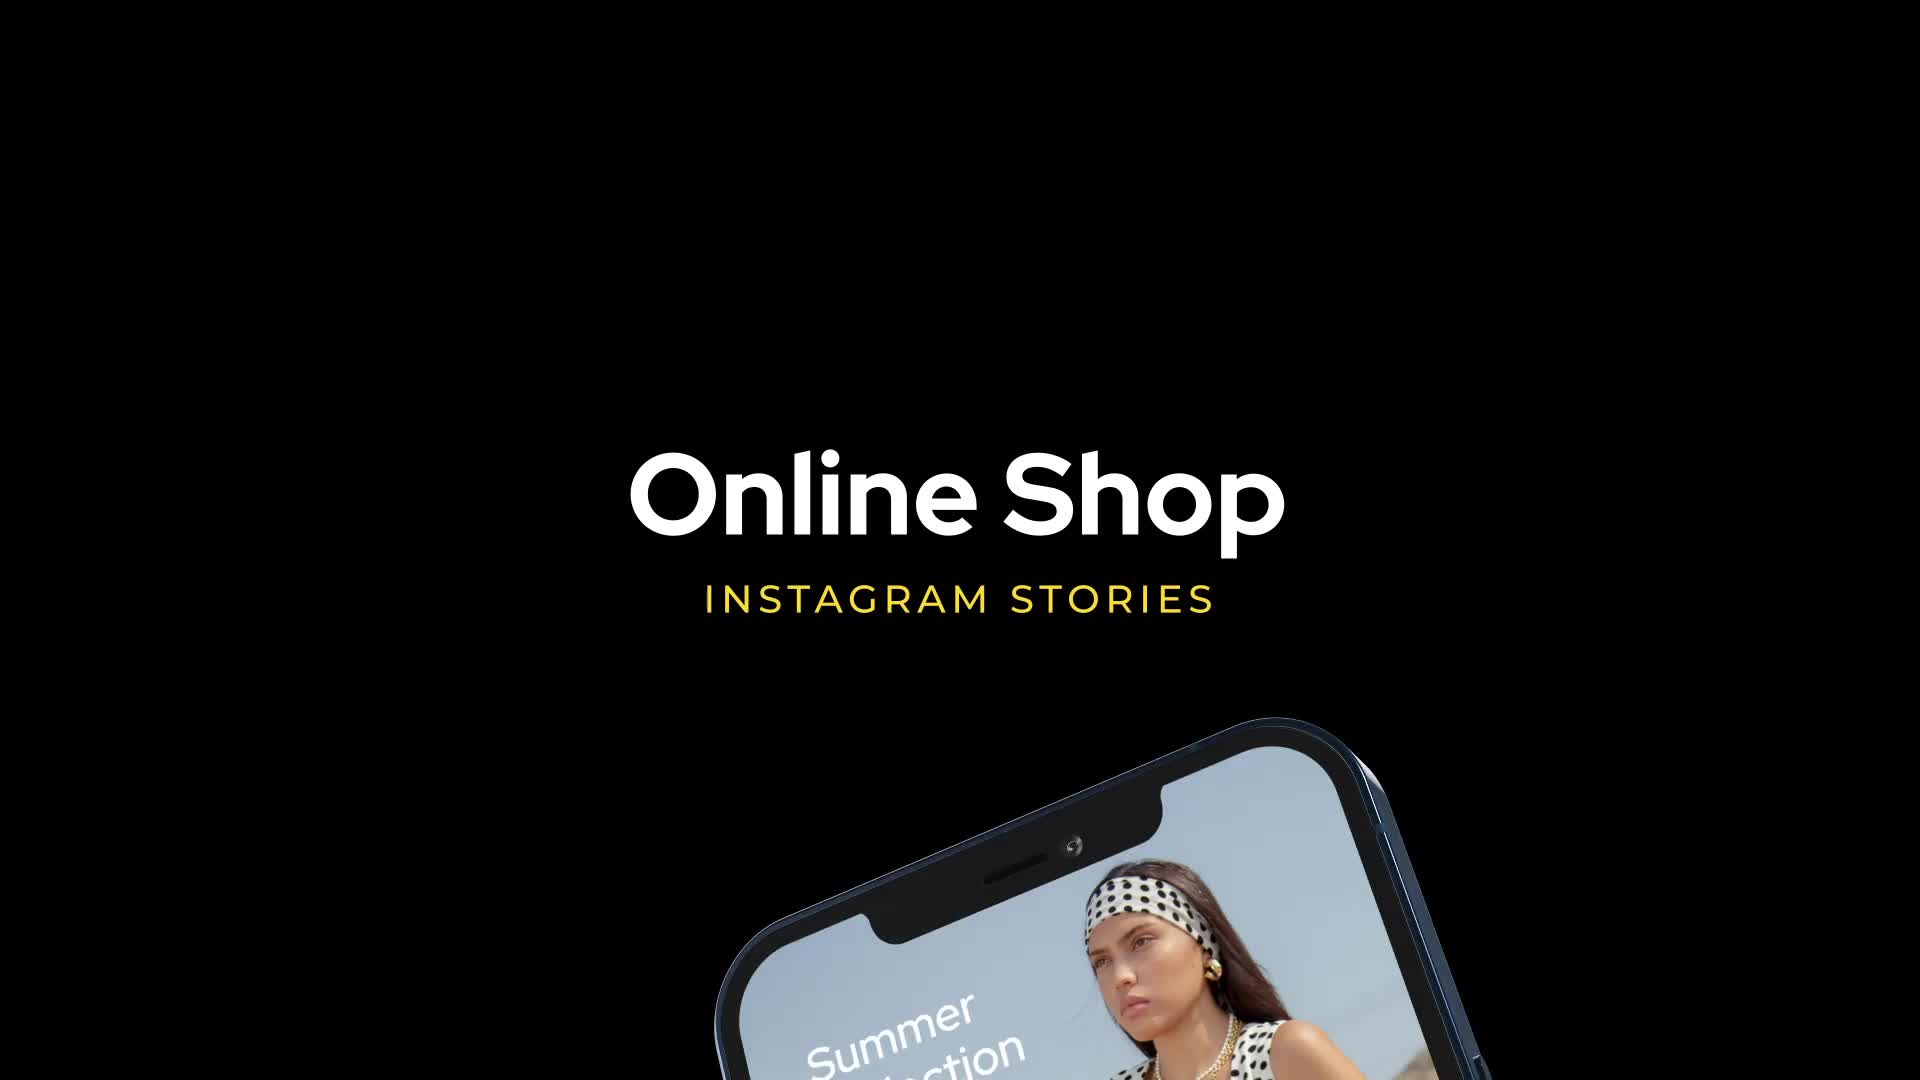 Online Shop Instagram Stories for Premiere Pro Videohive 33317007 Premiere Pro Image 1